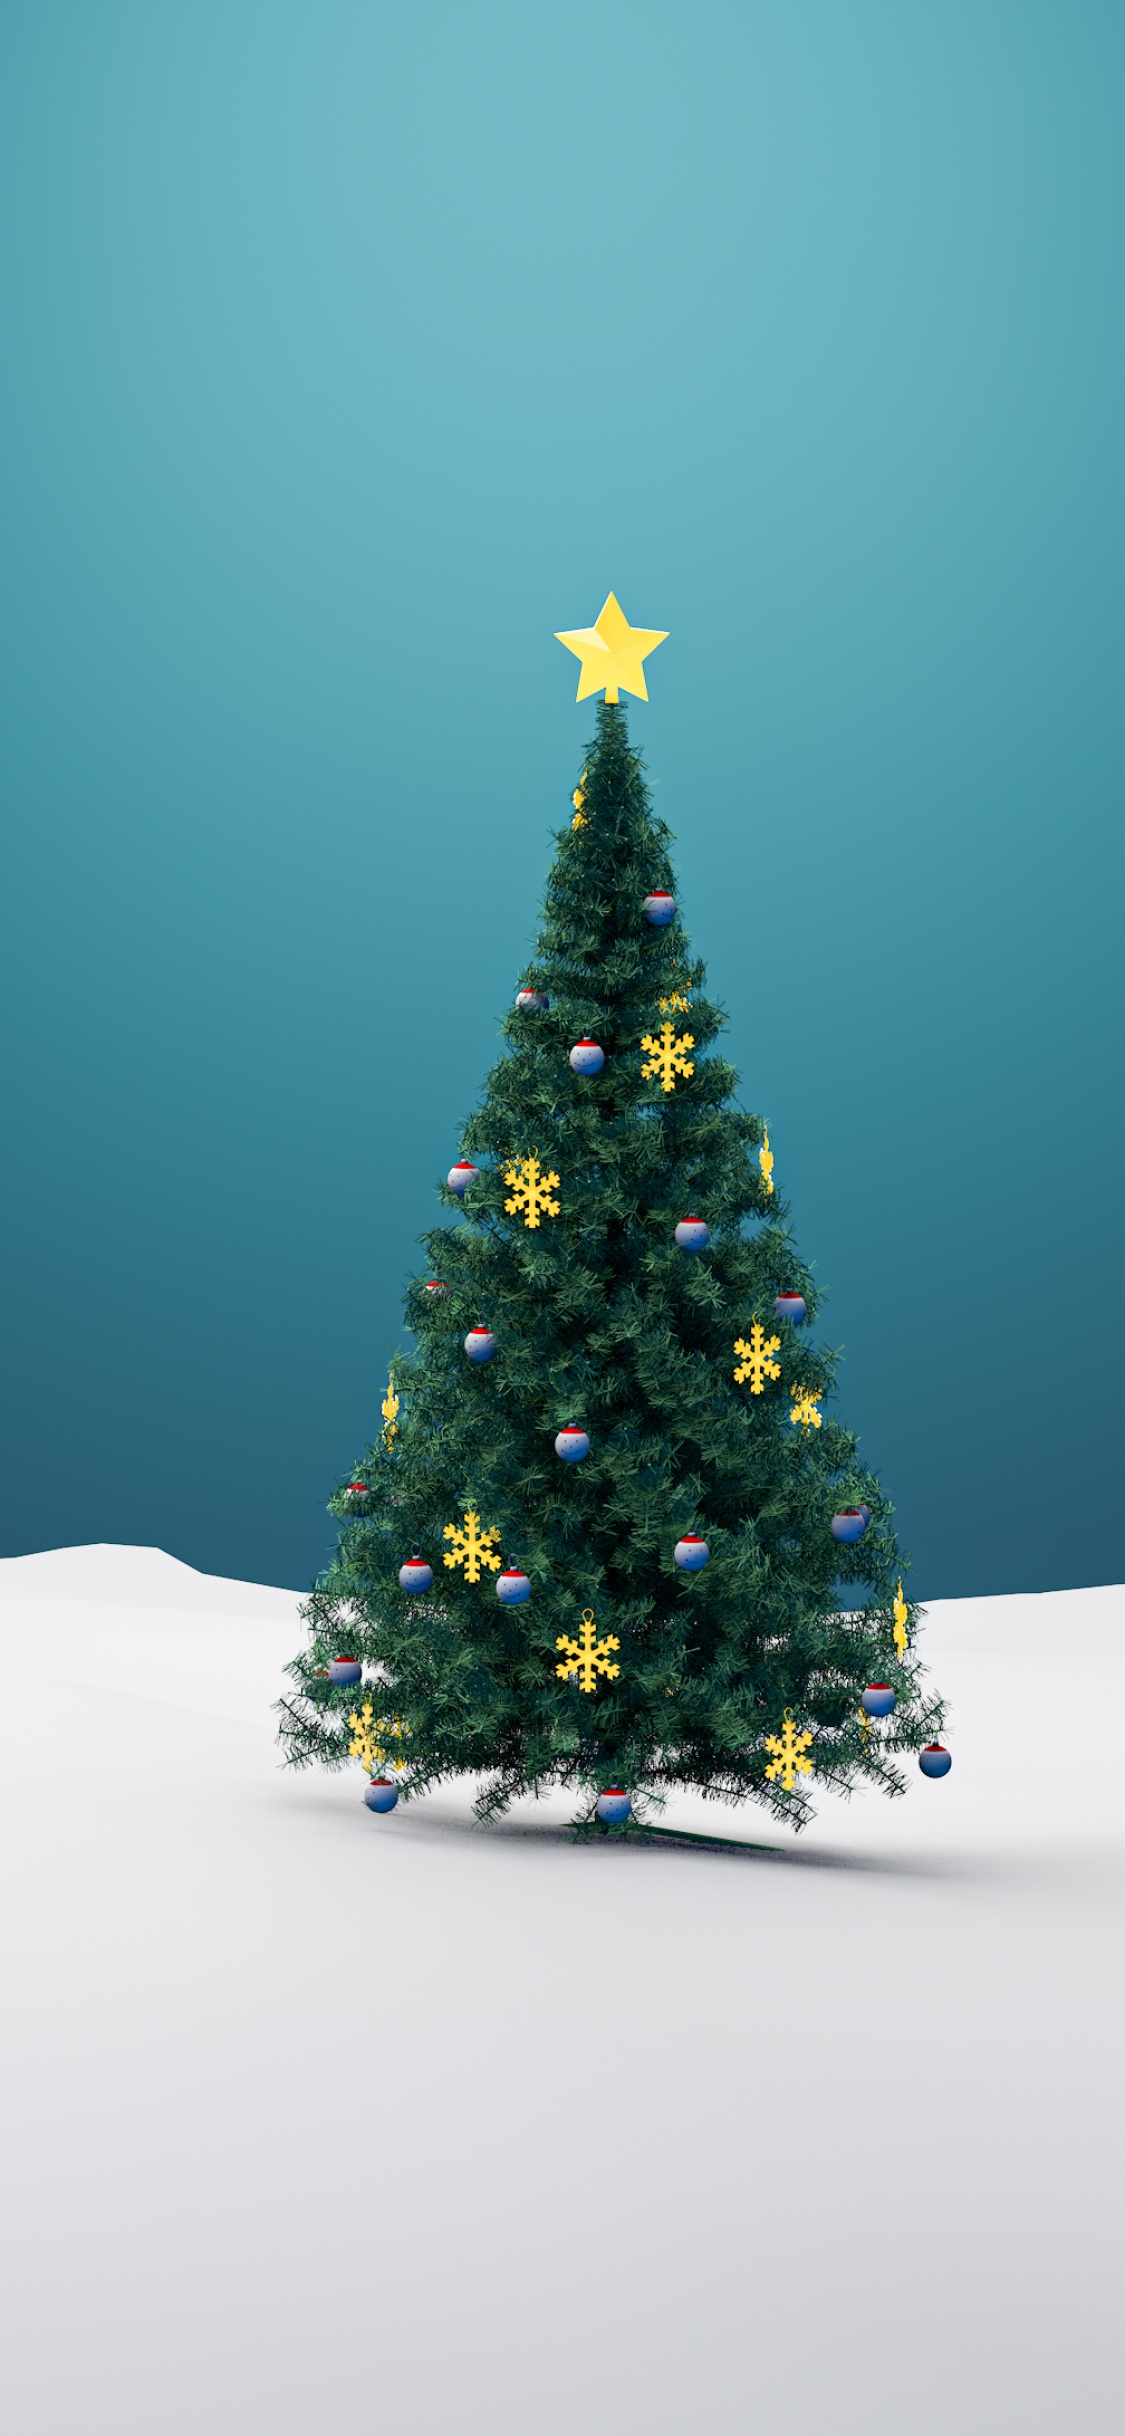 Những hình nền về cây thông Giáng sinh 4K sẽ mang đến cho bạn những khoảnh khắc đậm chất Giáng sinh trong lòng nhà. Hình ảnh sắc nét, đặc sắc và tuyệt đẹp sẽ giúp cho chiếc điện thoại của bạn trở nên đẹp mắt hơn bao giờ hết. Hãy tải về ngay những hình nền này để trải nghiệm không khí Giáng sinh thật sự.